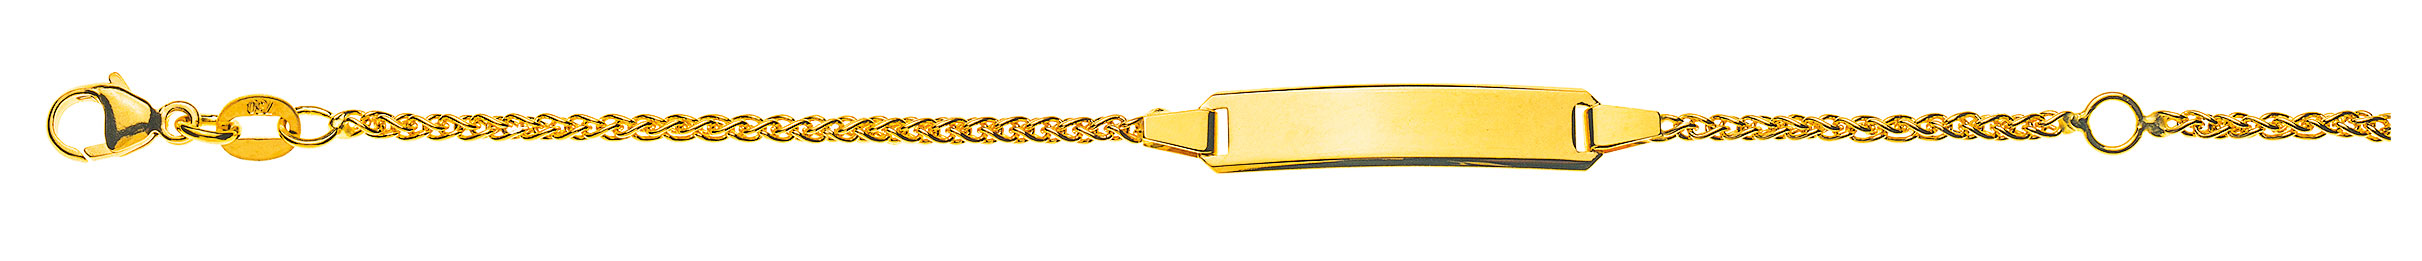 AURONOS Prestige ID-Bracelet 18k Gelbgold Zopfkette 18cm